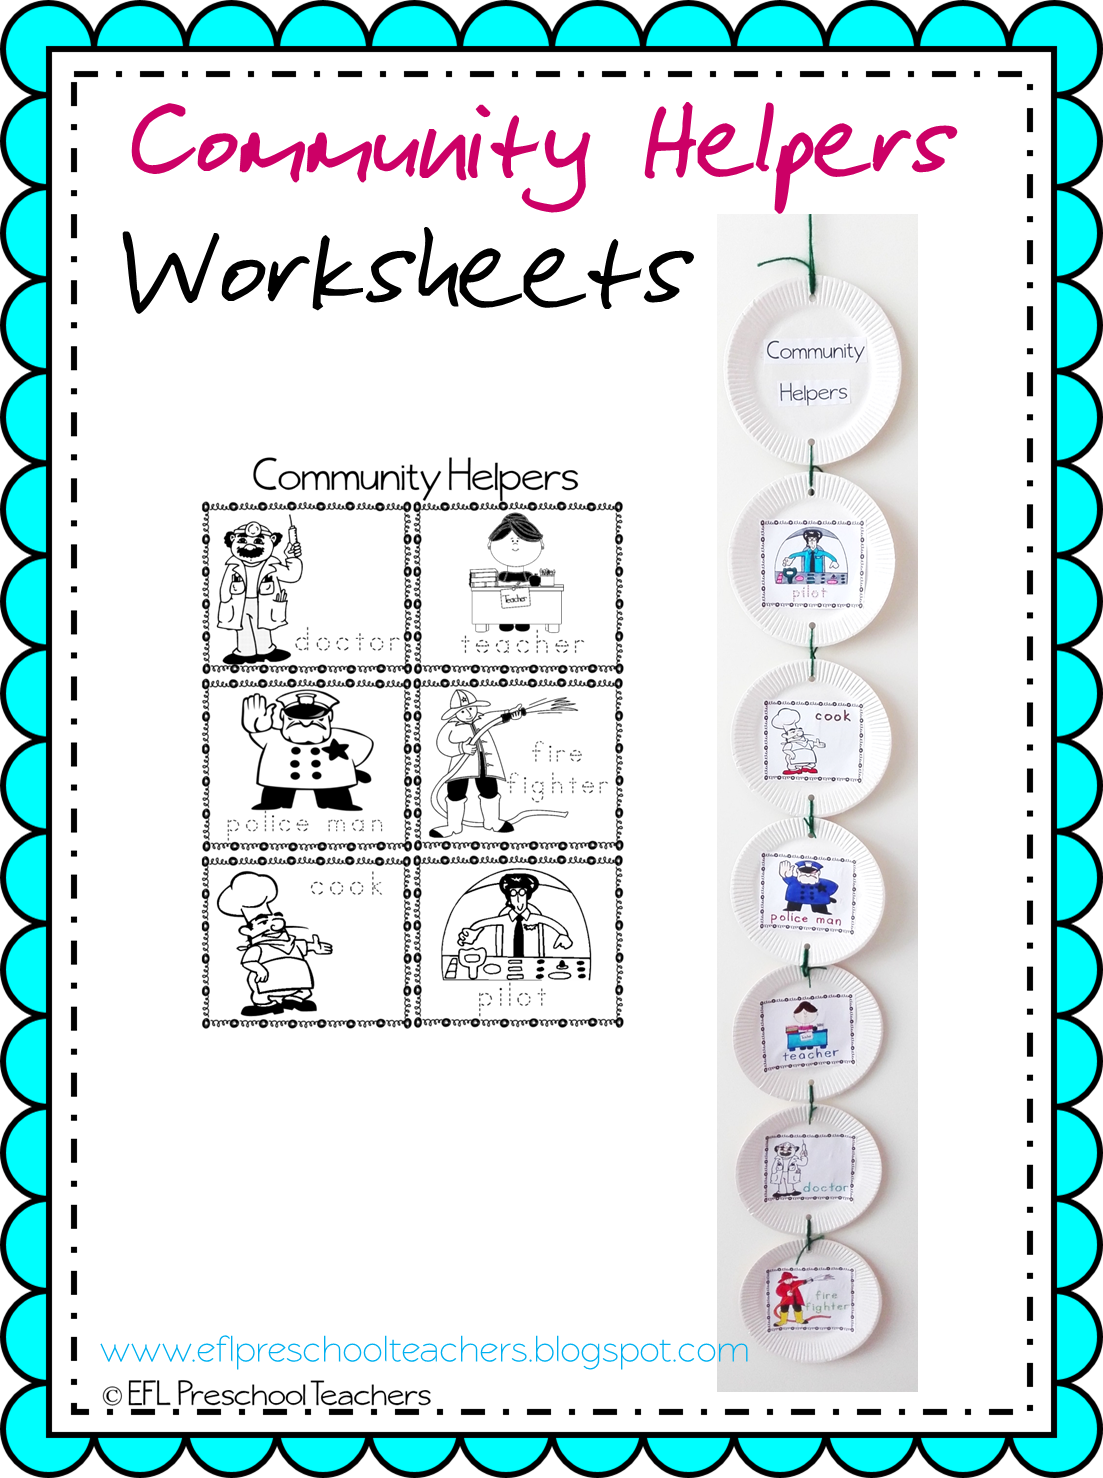 ESL/EFL Preschool Teachers: Community Helpers Worksheets and More